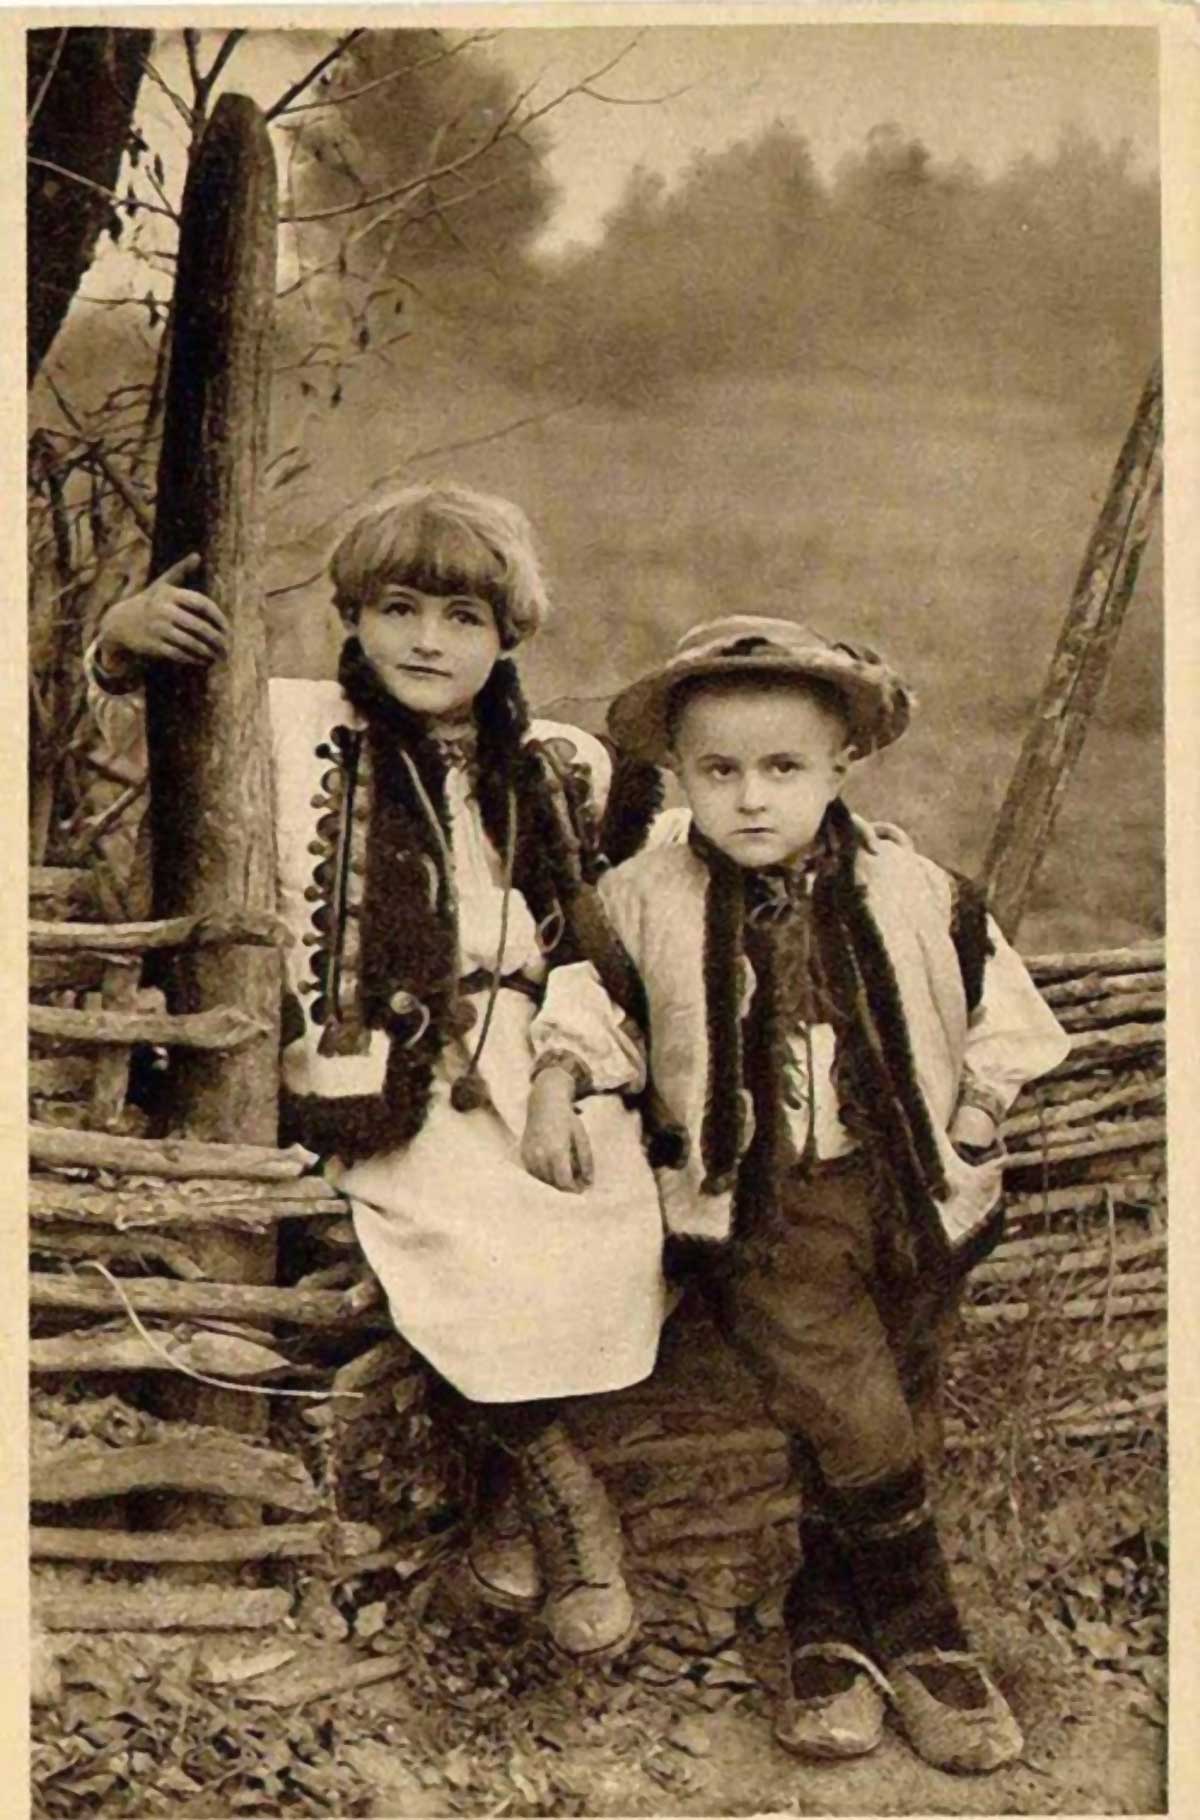 Архивска фотографија деце Хуцула, занимљиви су опанци на ногама дечака, са шиљастим и нагоре повијеним крајевима.